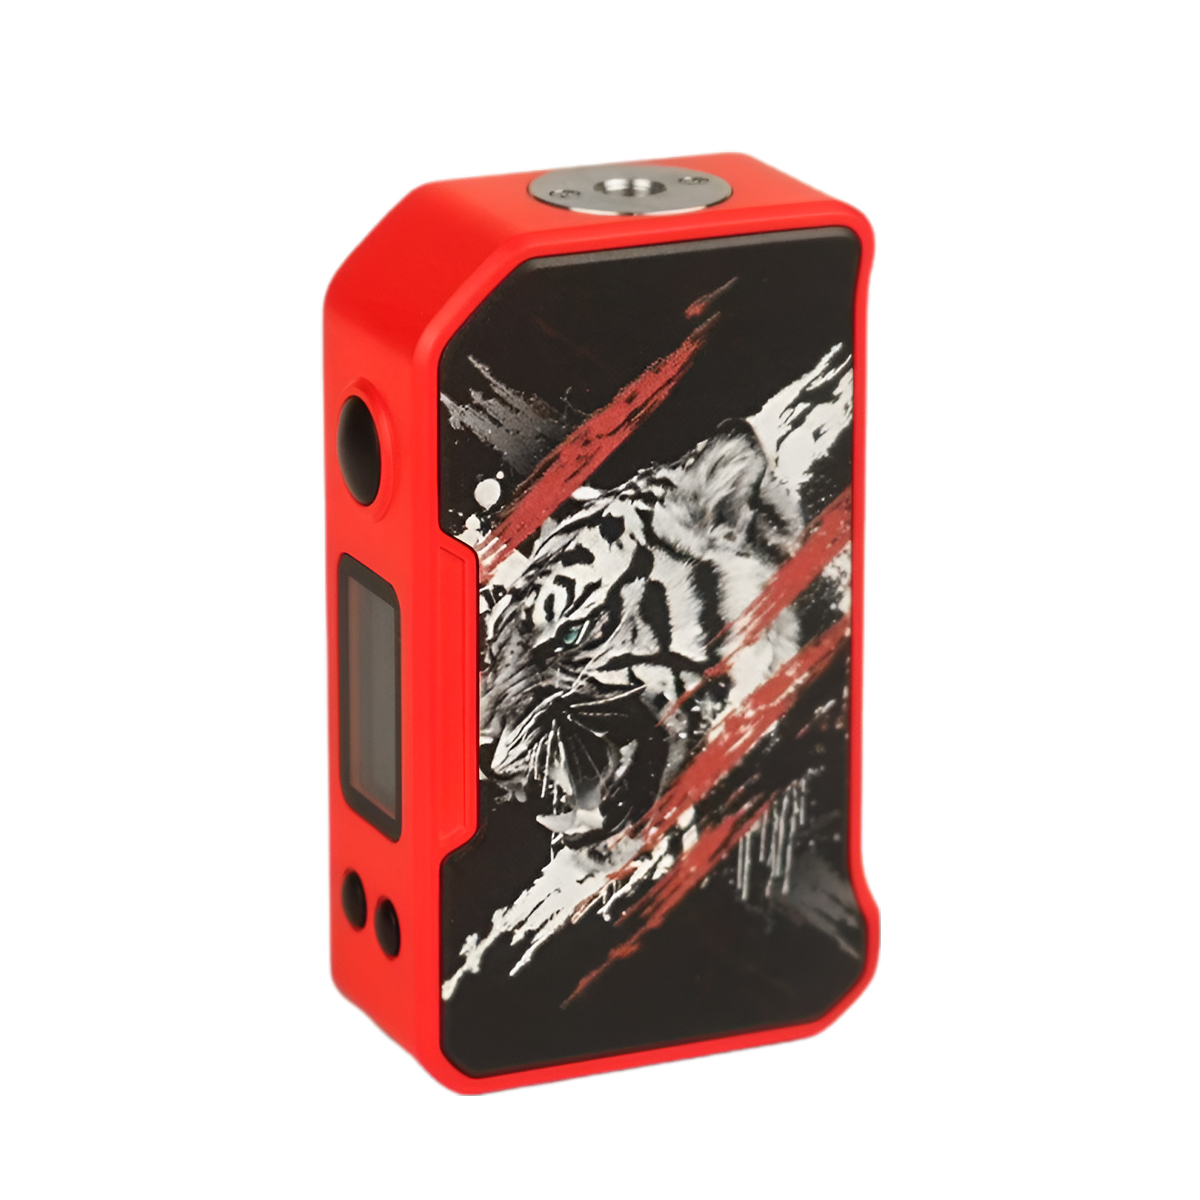 Dovpo MVP Box-Mod Kit Tiger Red  